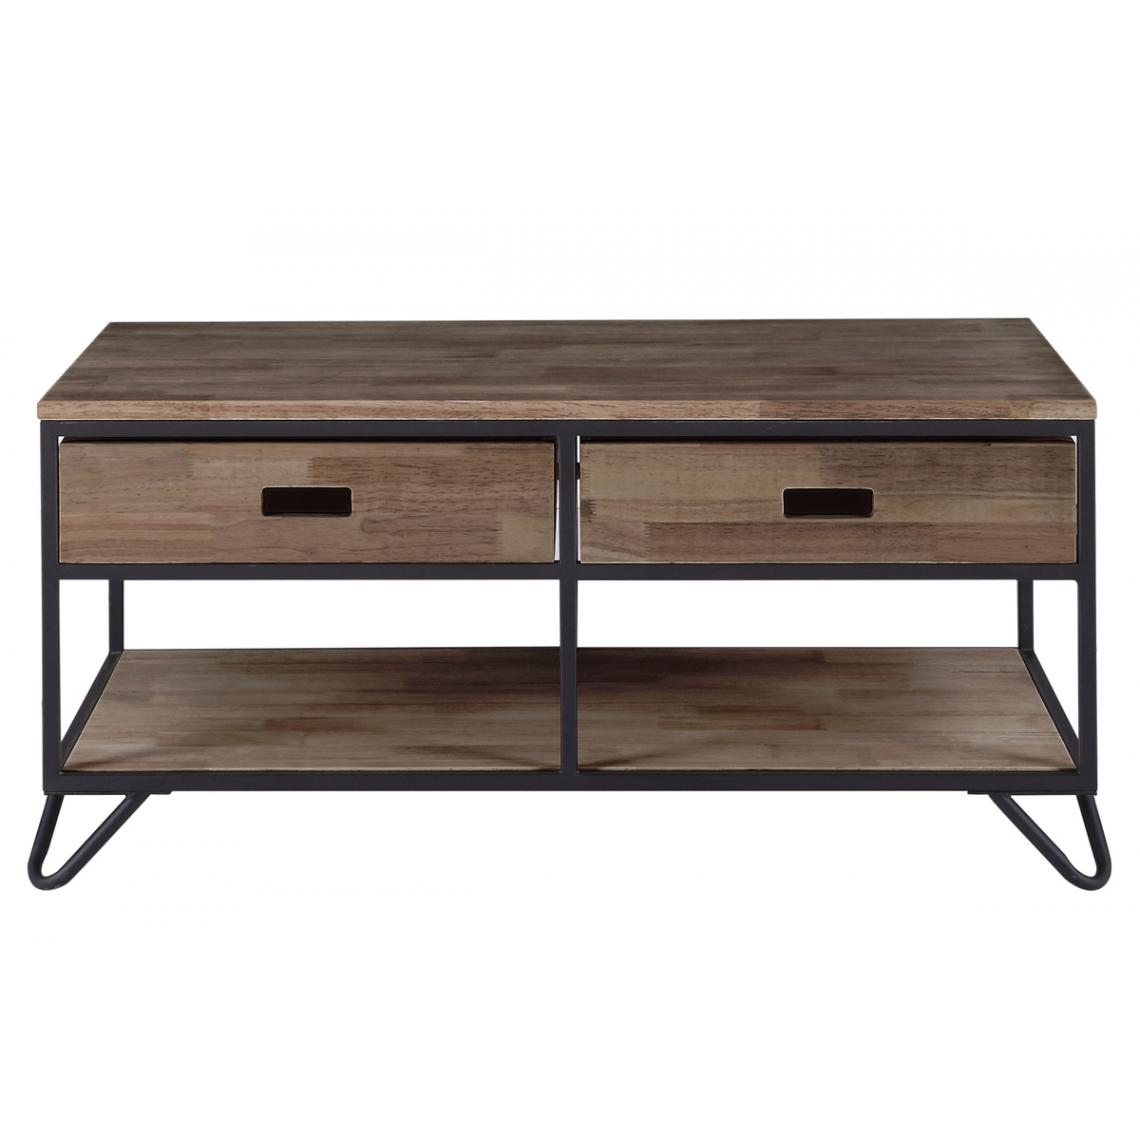 Pegane - Table basse en bois coloris chêne américain / pieds noir - Longueur 150 x profondeur 46 x hauteur 75 cm - Tables basses